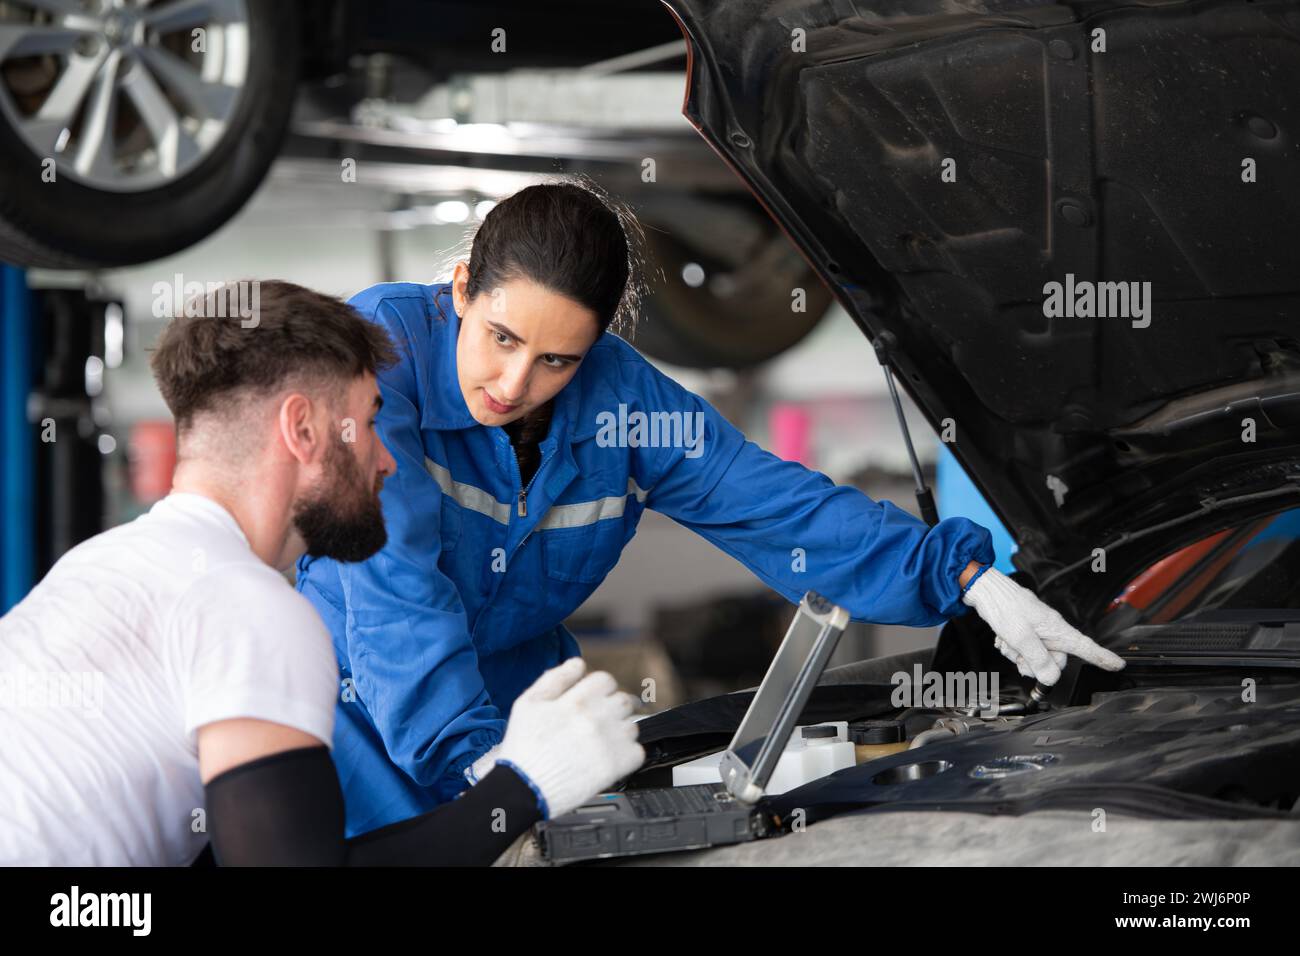 Professioneller Automechaniker, Mann und Frau, die zusammen in einer Autowerkstatt arbeiten. Stockfoto